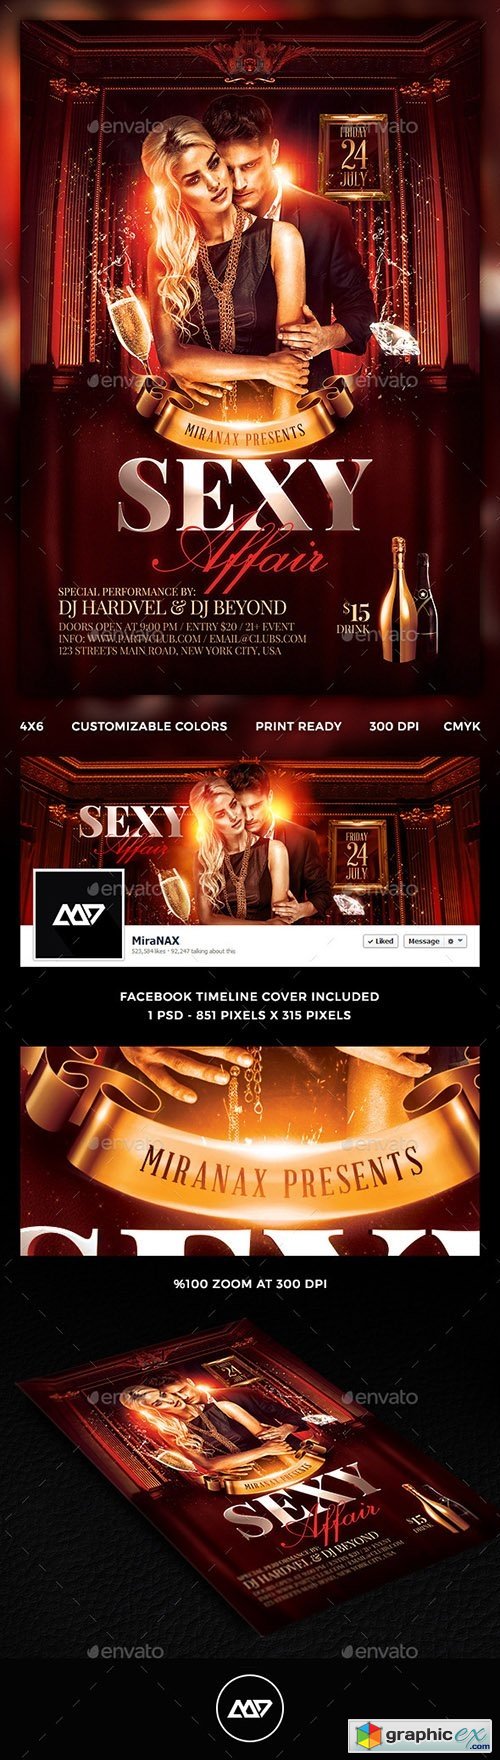 Sexy Affair Flyer Template PSD